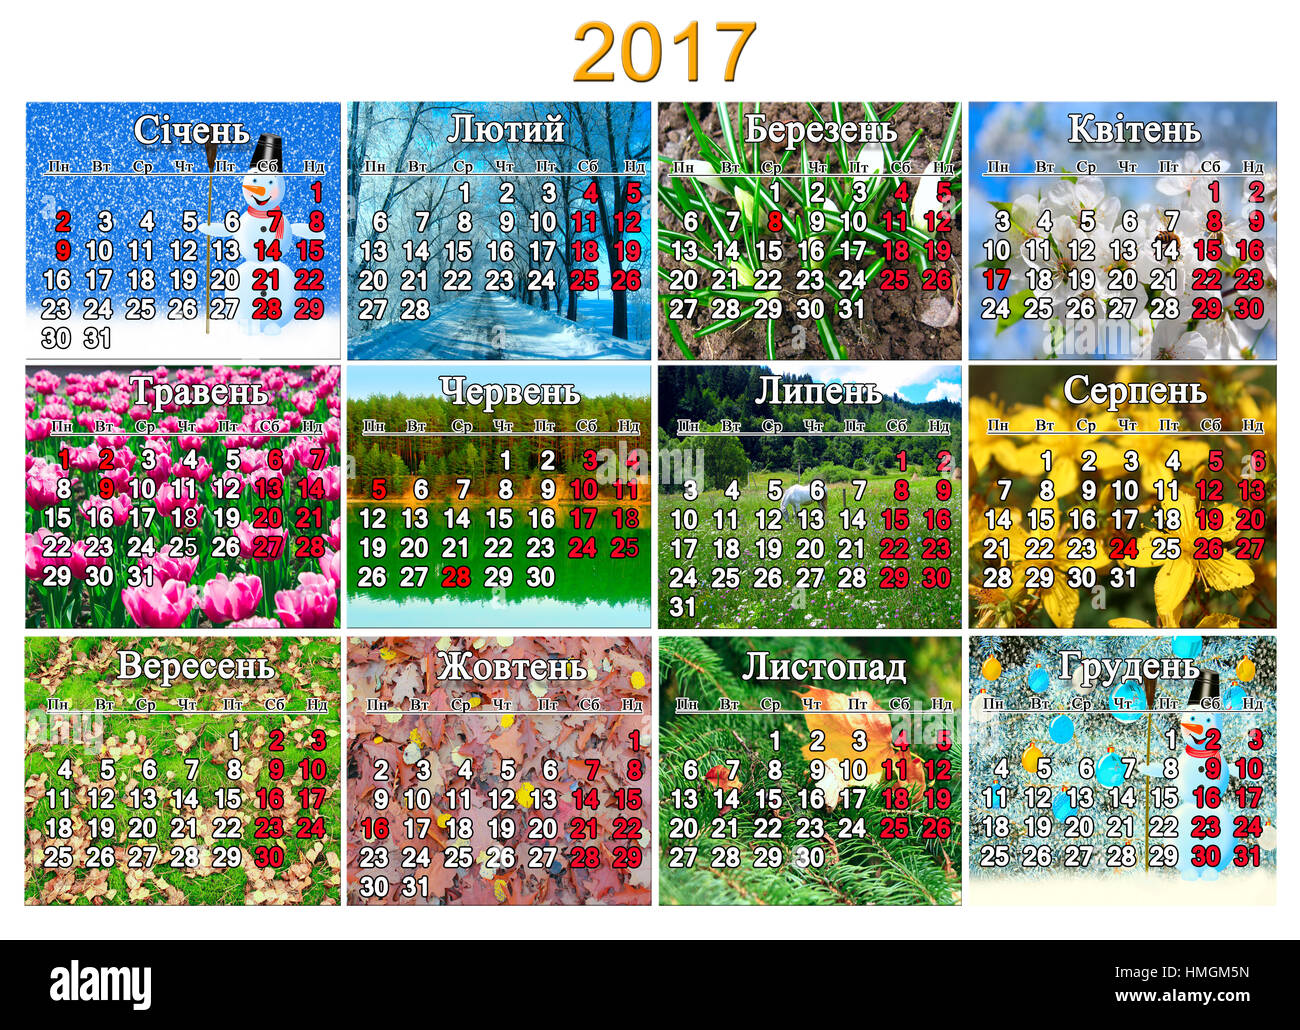 Calendrier pour 2017 avec des jours de congés et jours fériés en ukrainien avec une photo pour chaque mois de la nature Banque D'Images